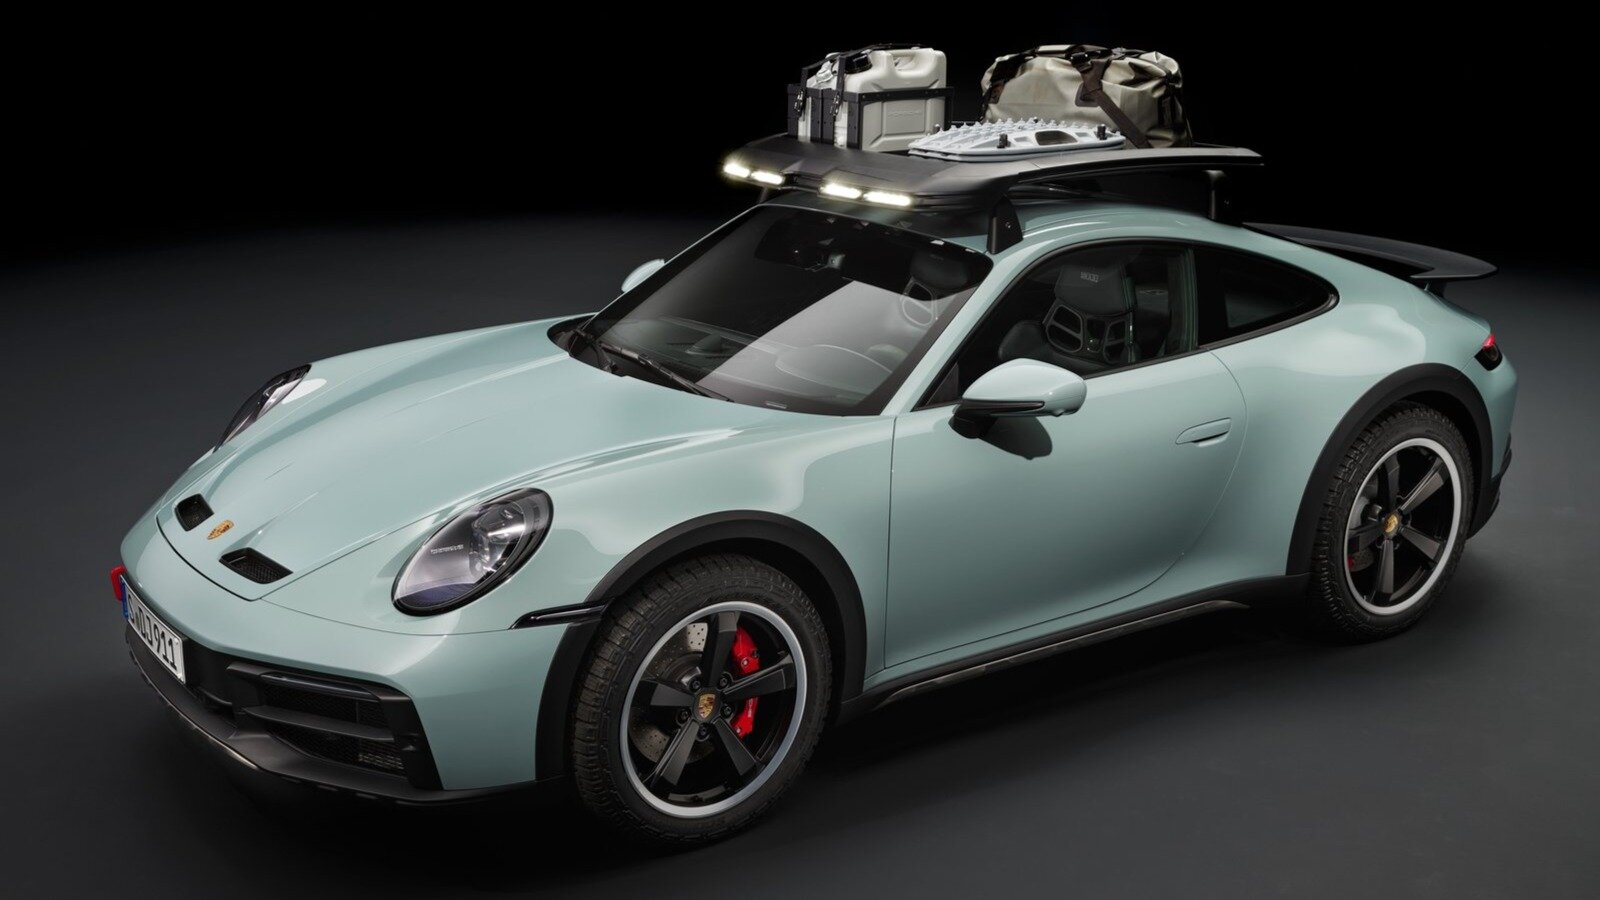 Топовой моделью в линейке Porsche – вершина роскоши и элитарности